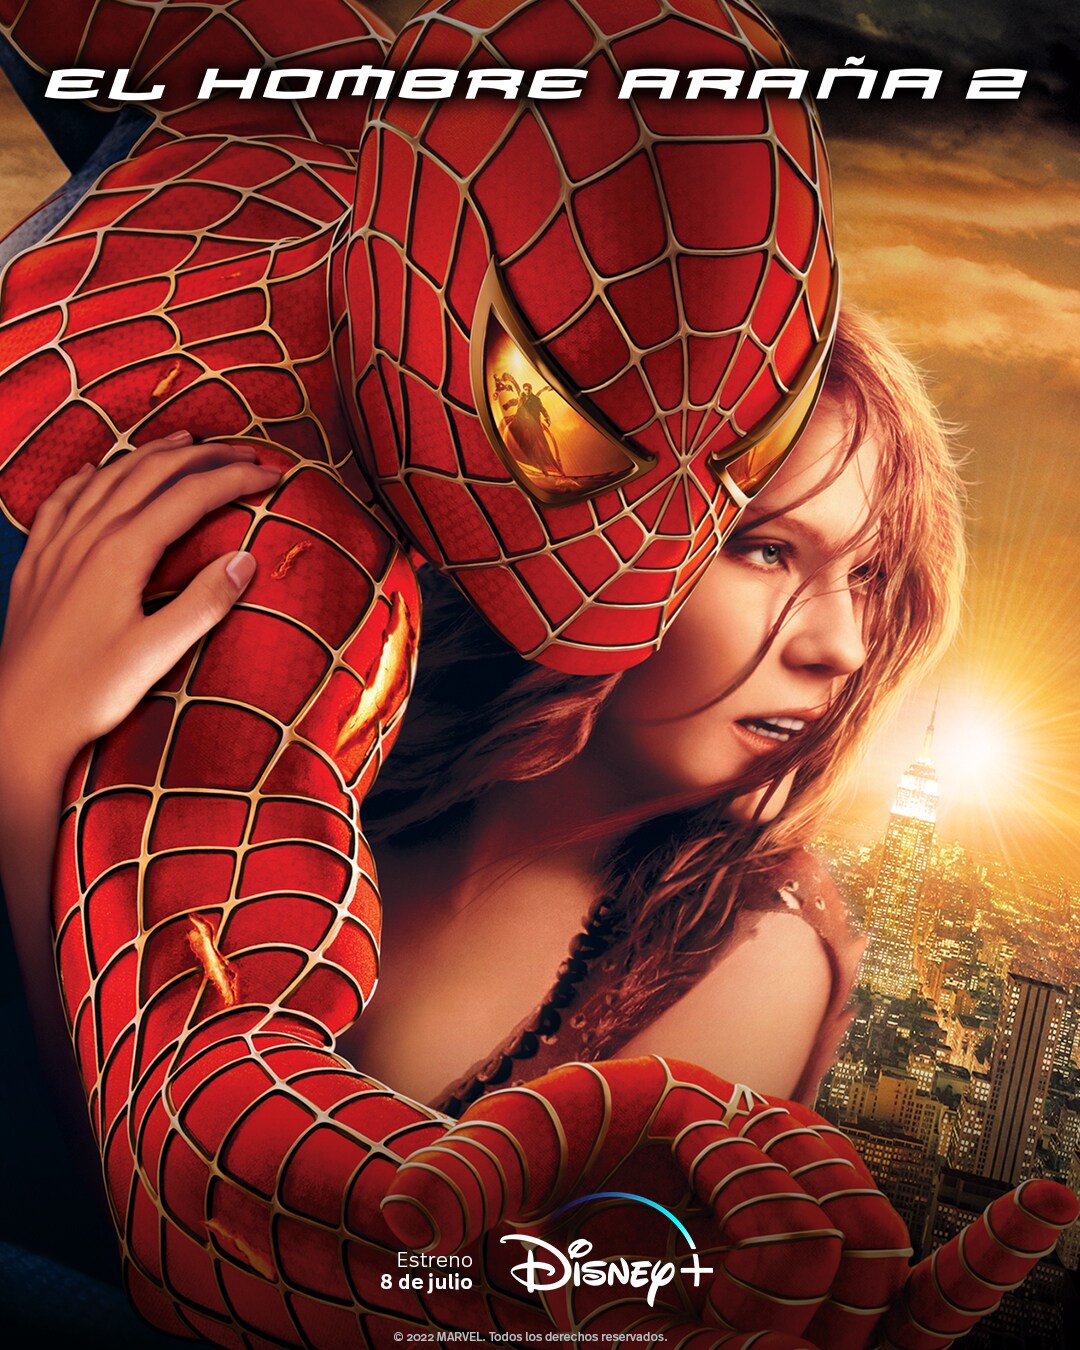 Qué películas de Spider-Man llegarán a Disney+?